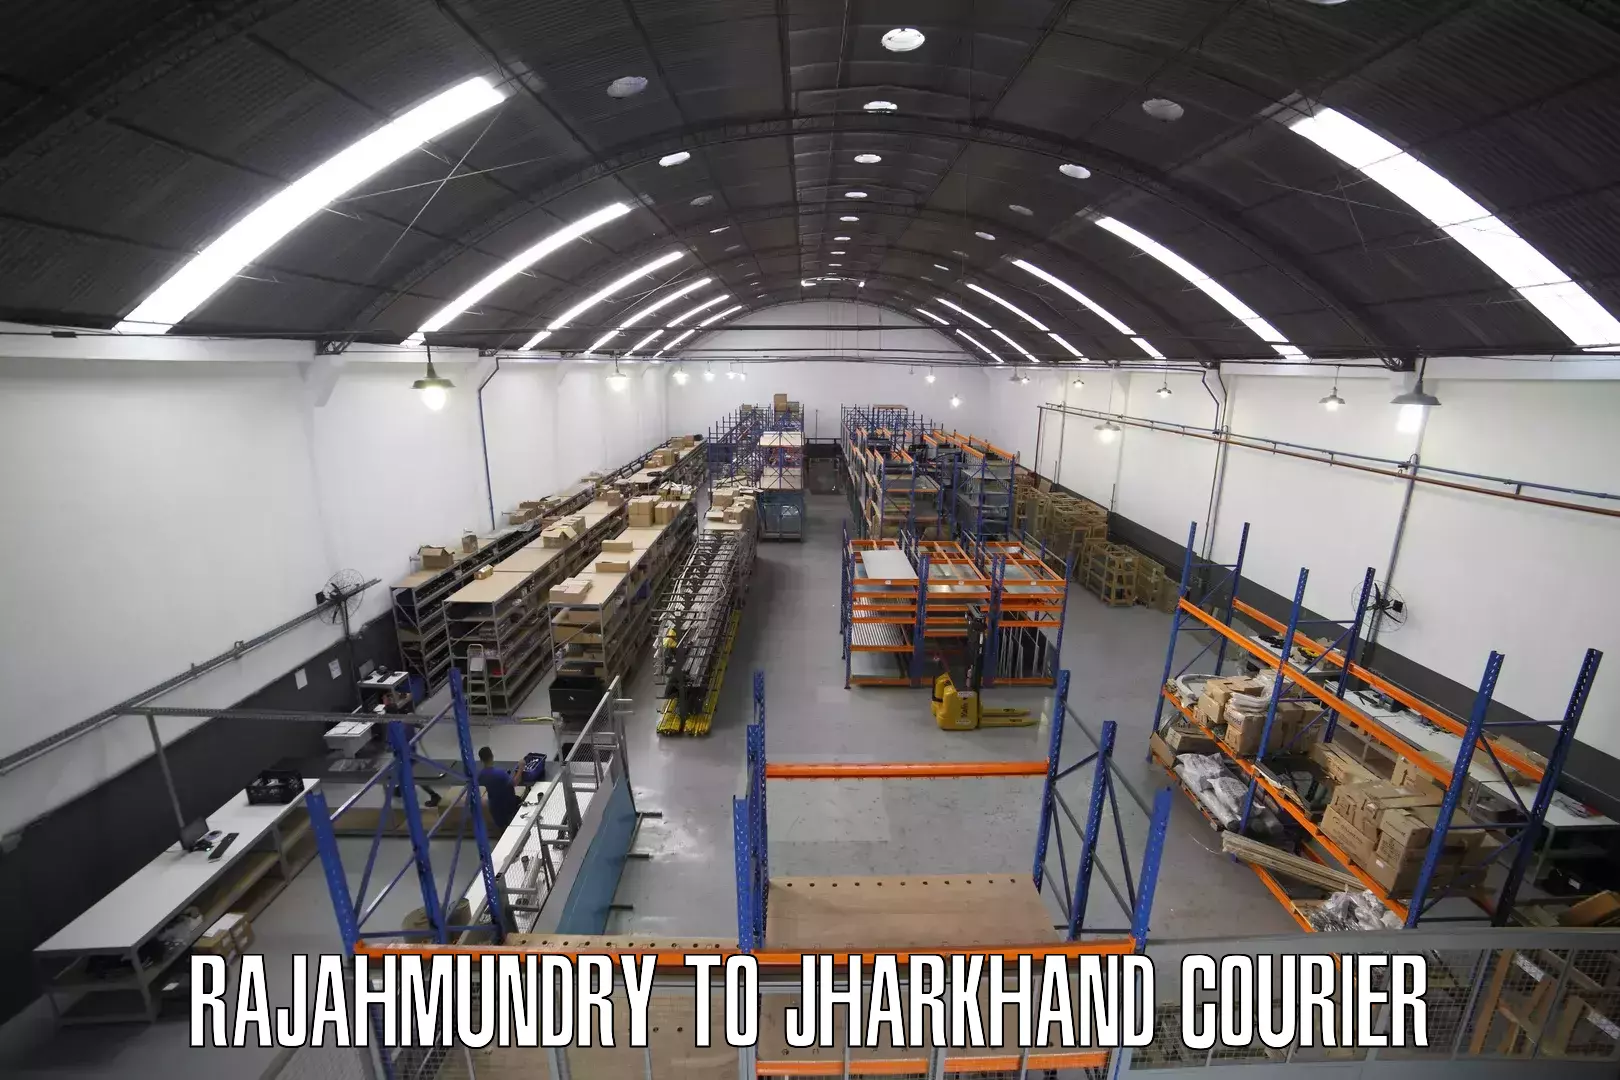 High-priority parcel service Rajahmundry to Dhanbad